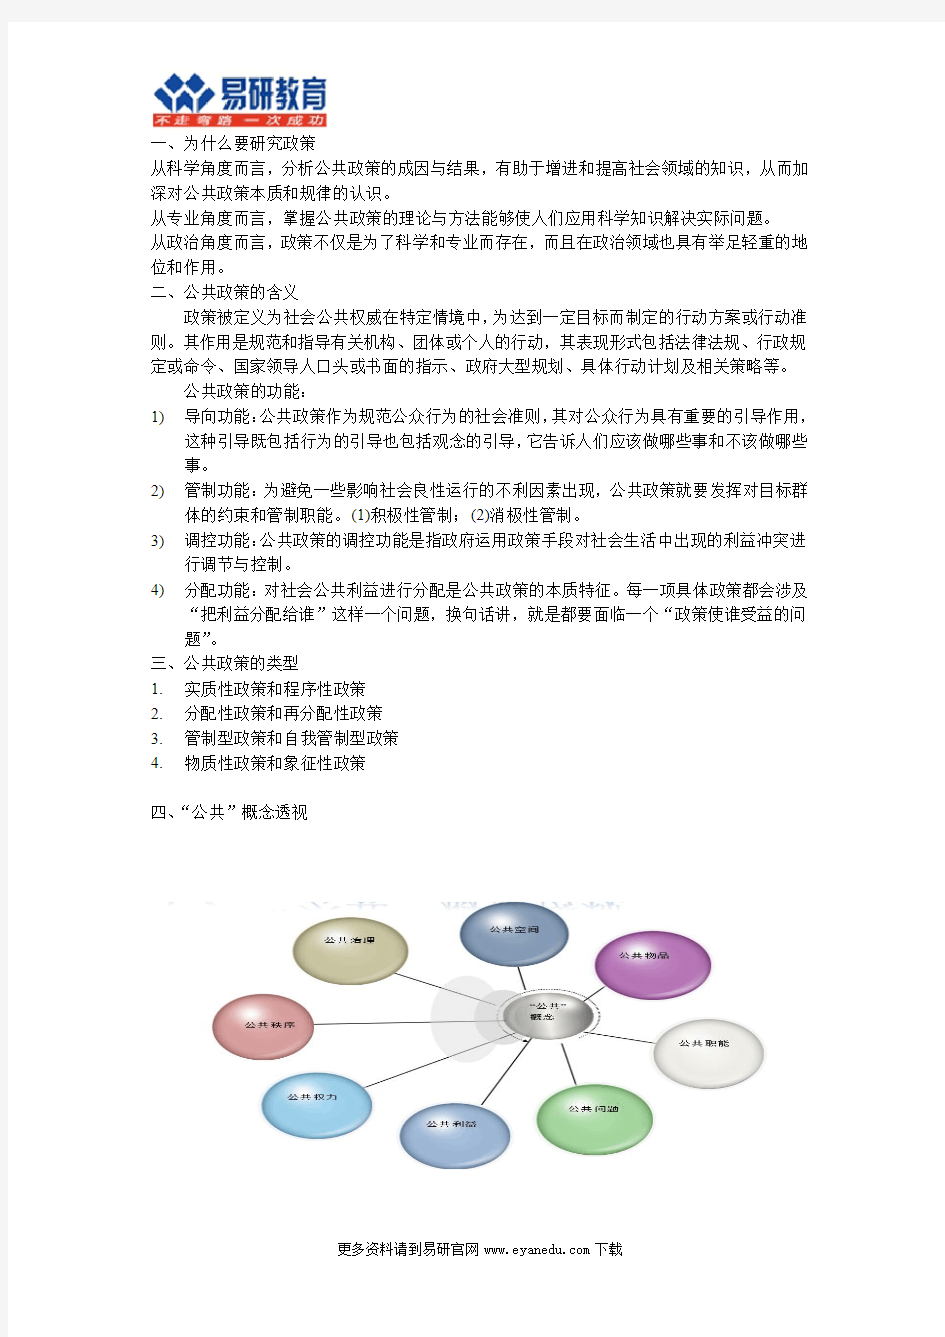 【学长分享】2016中国人民大学行政管理考研谢明《公共政策概论》重点总结